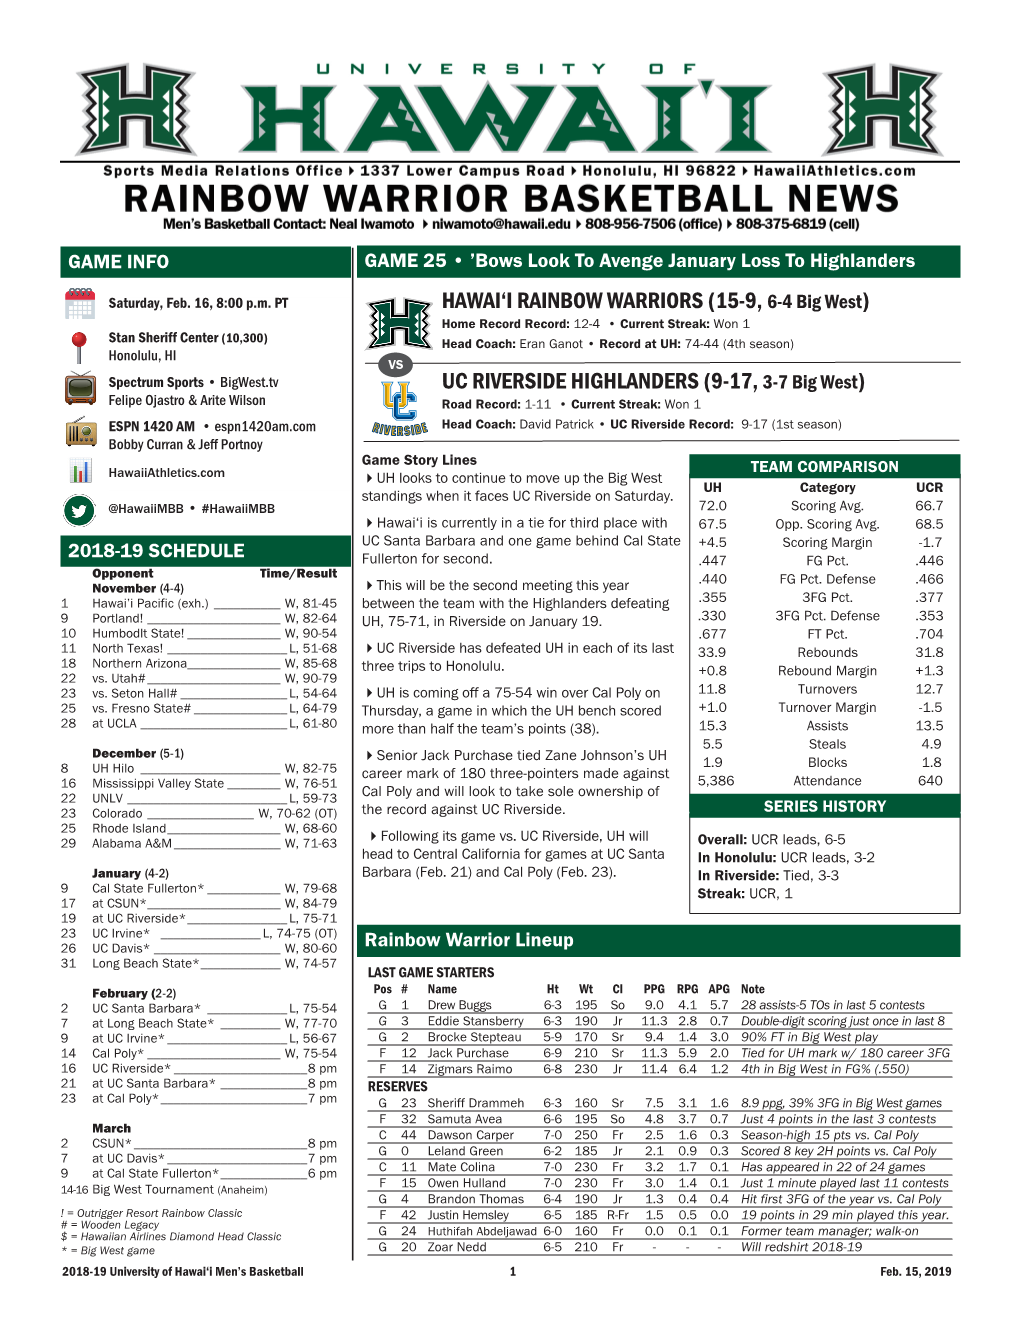 HAWAI'i RAINBOW WARRIORS (15-9, 6-4 Big West) UC RIVERSIDE HIGHLANDERS (9-17, 3-7 Big West)